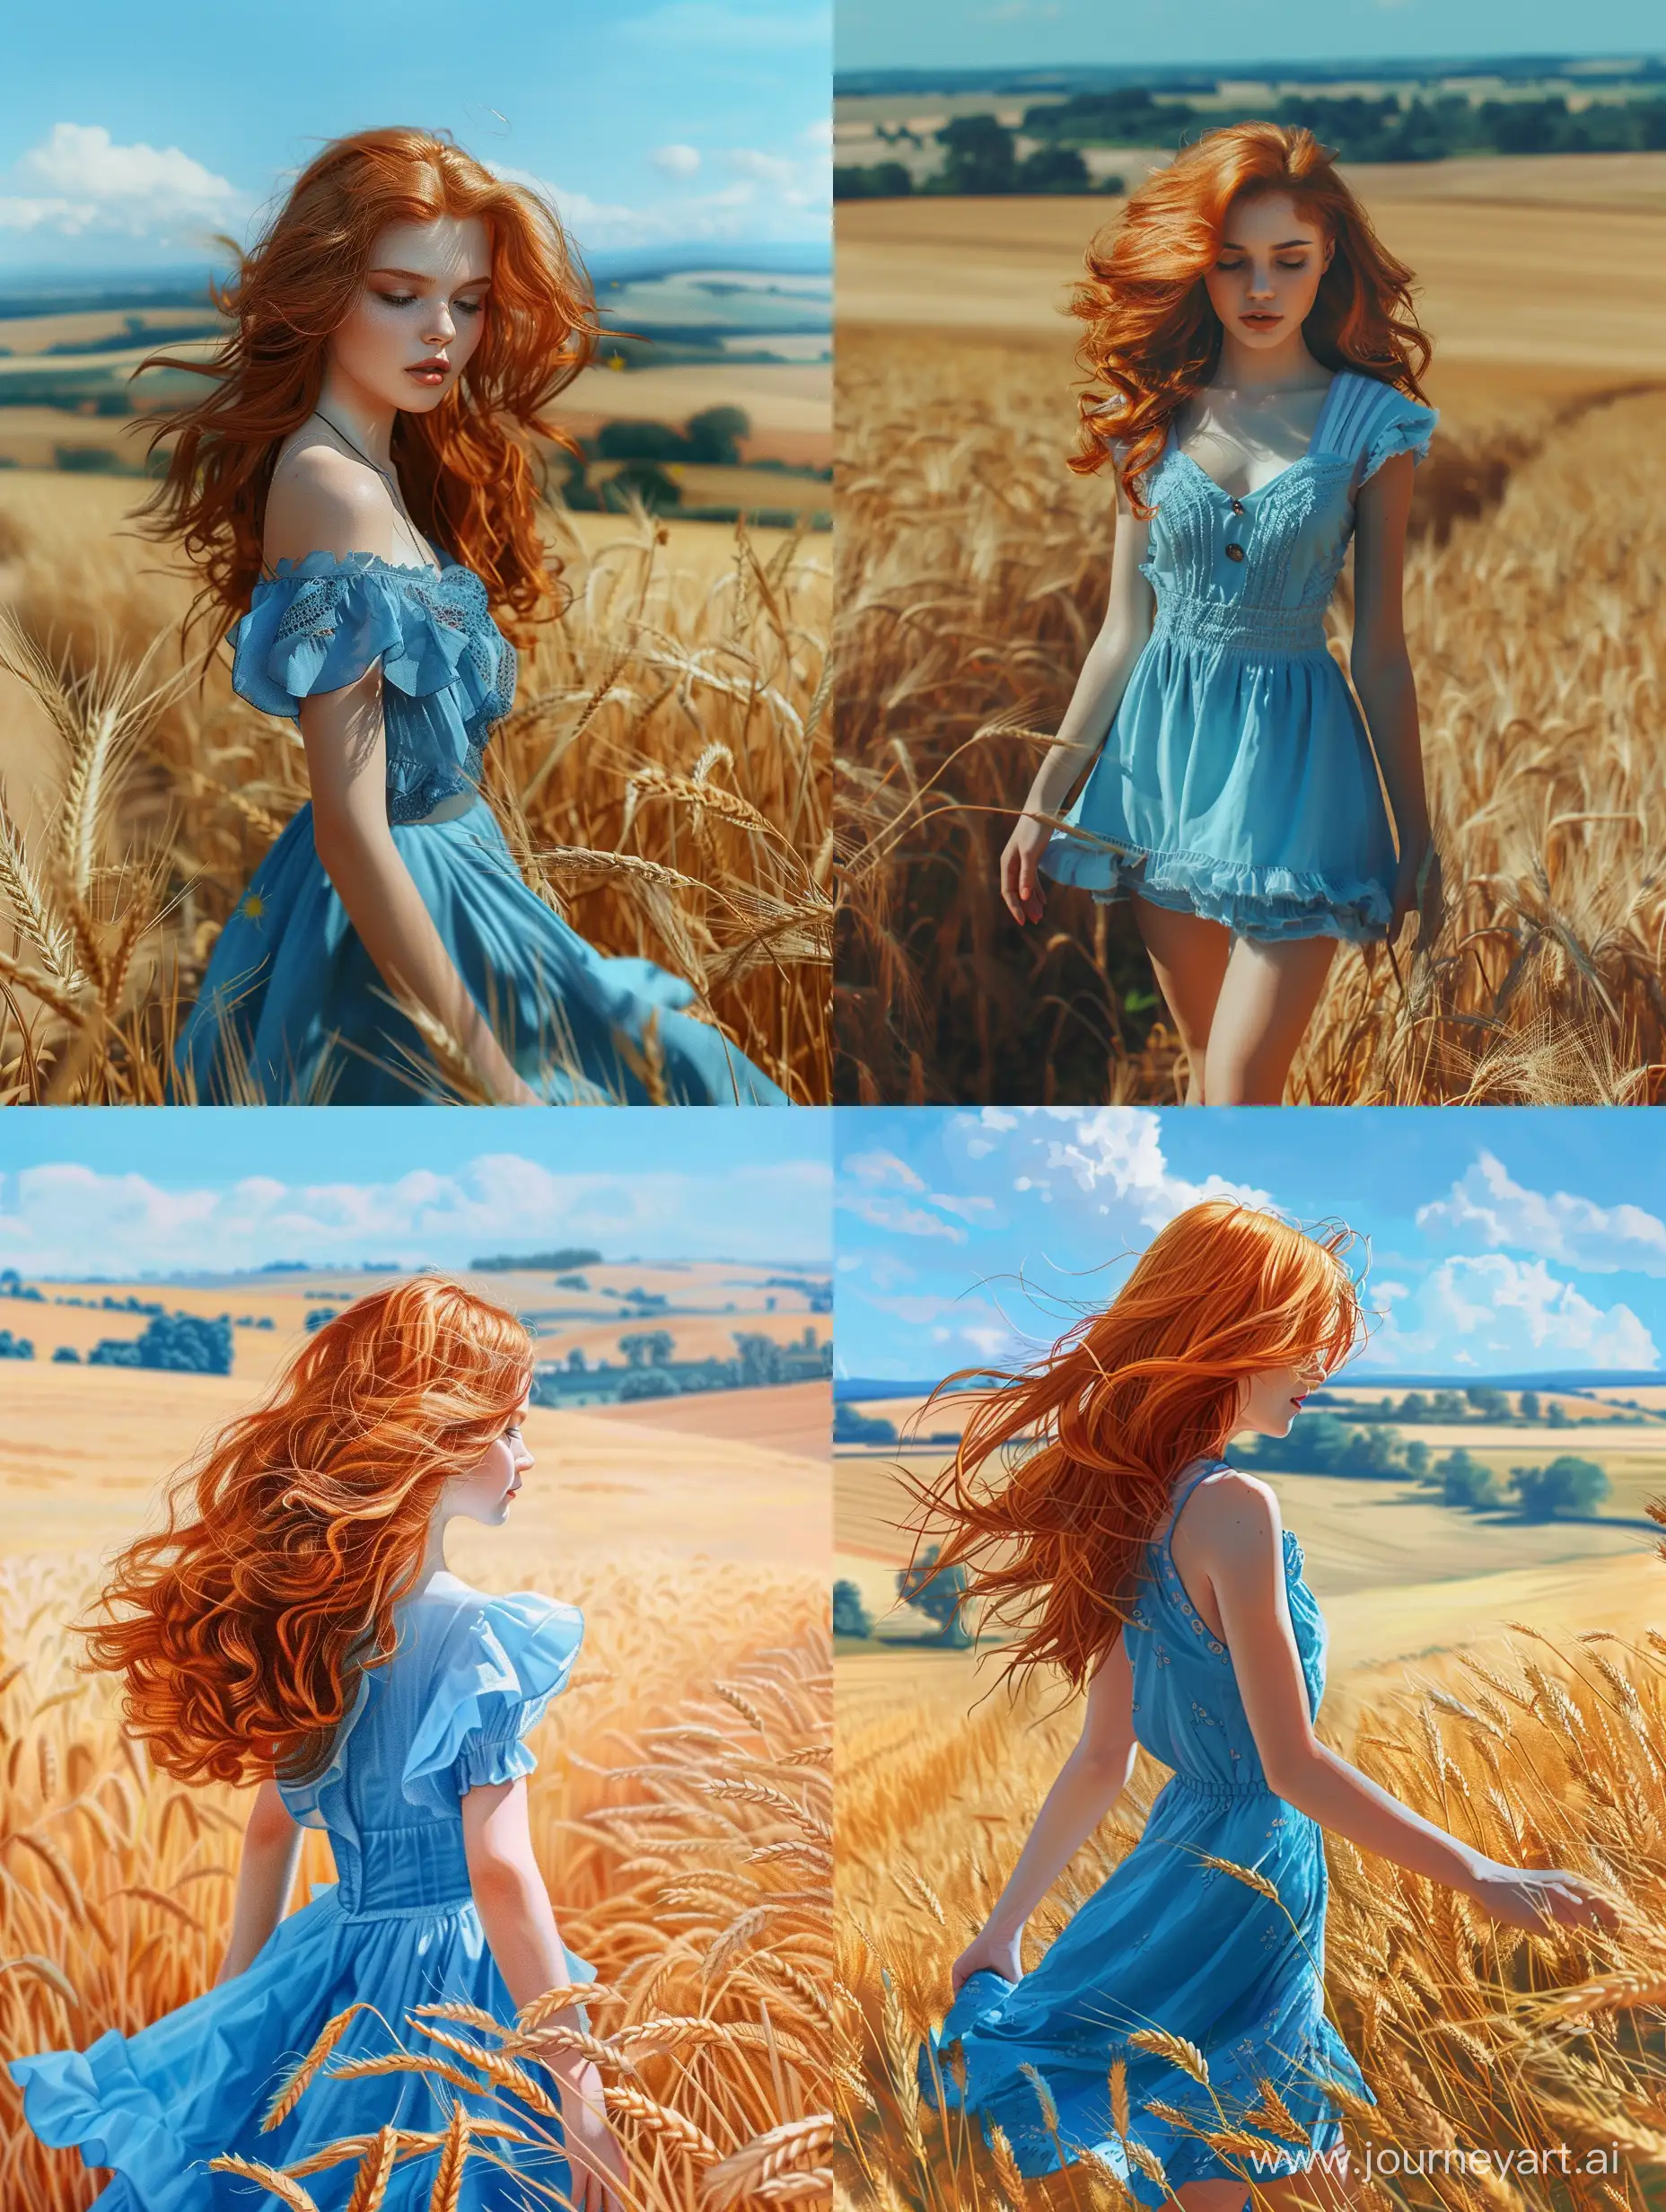 невероятно красивая девушка в полный рост, с русыми волосами, в синем платье идет по пшеничному полю, красивый пейзаж на фоне, синее небо, высокое разрешение, эстетично, красиво, яркое освещение, фотореализм